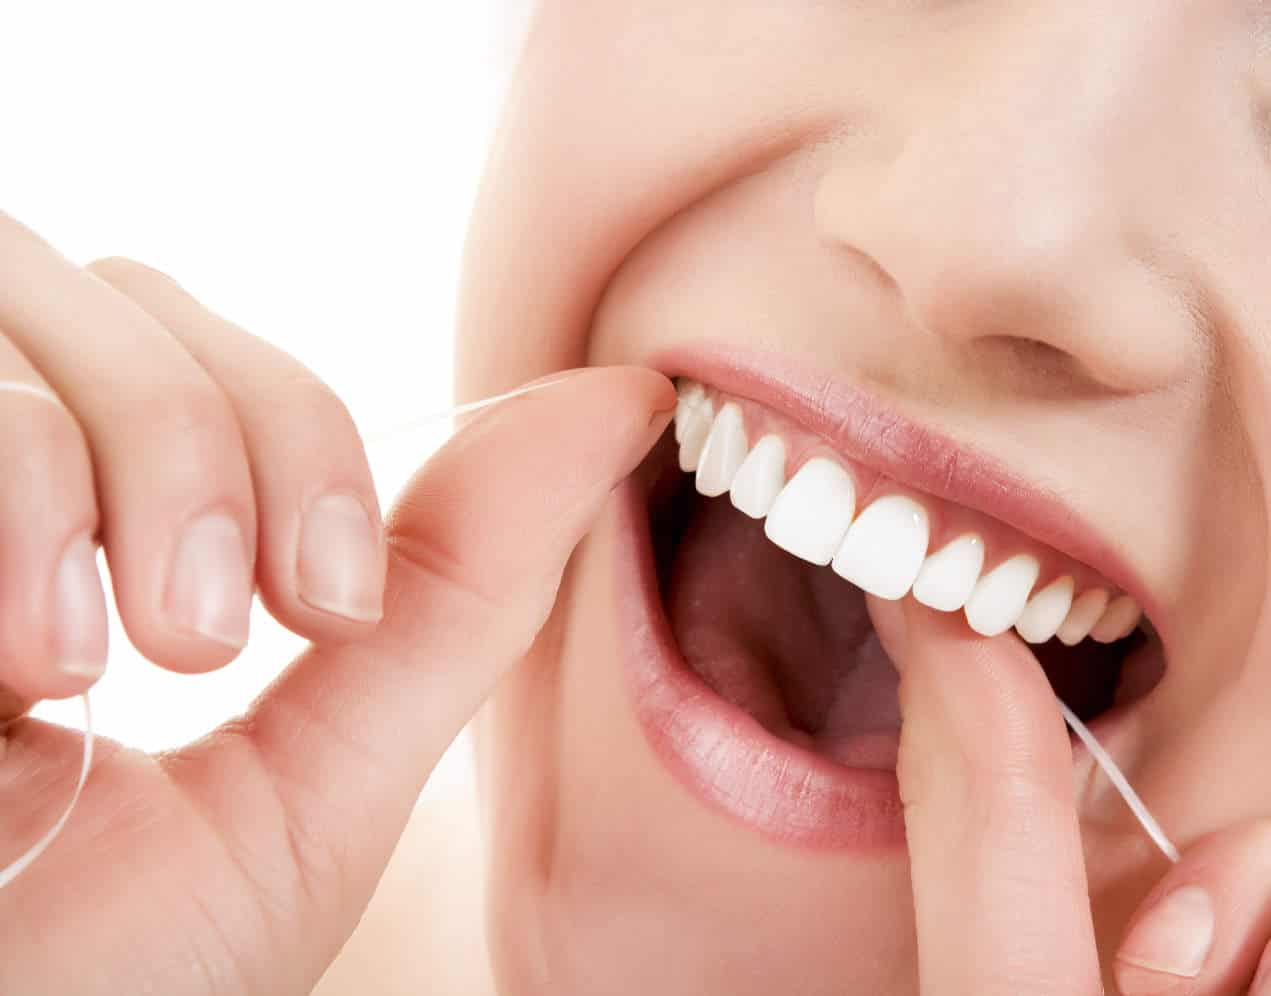 flossing teeth between gums cleaning bleeding vitamin lady hygiene tips clean tooth dental dentist woman intake increasing stop help brush